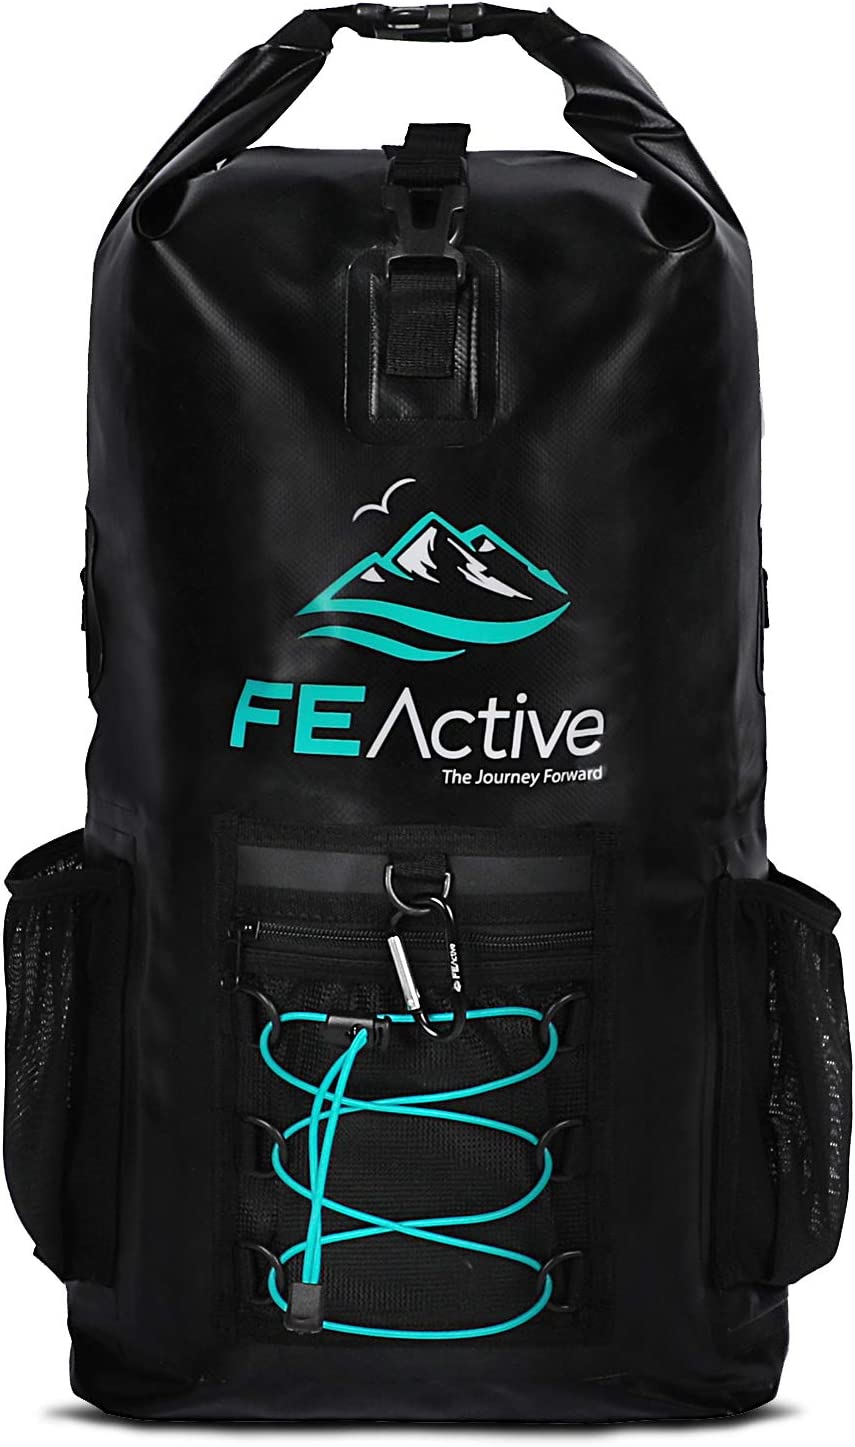 FE Active Dry Bag - Best Waterproof Dry Bag